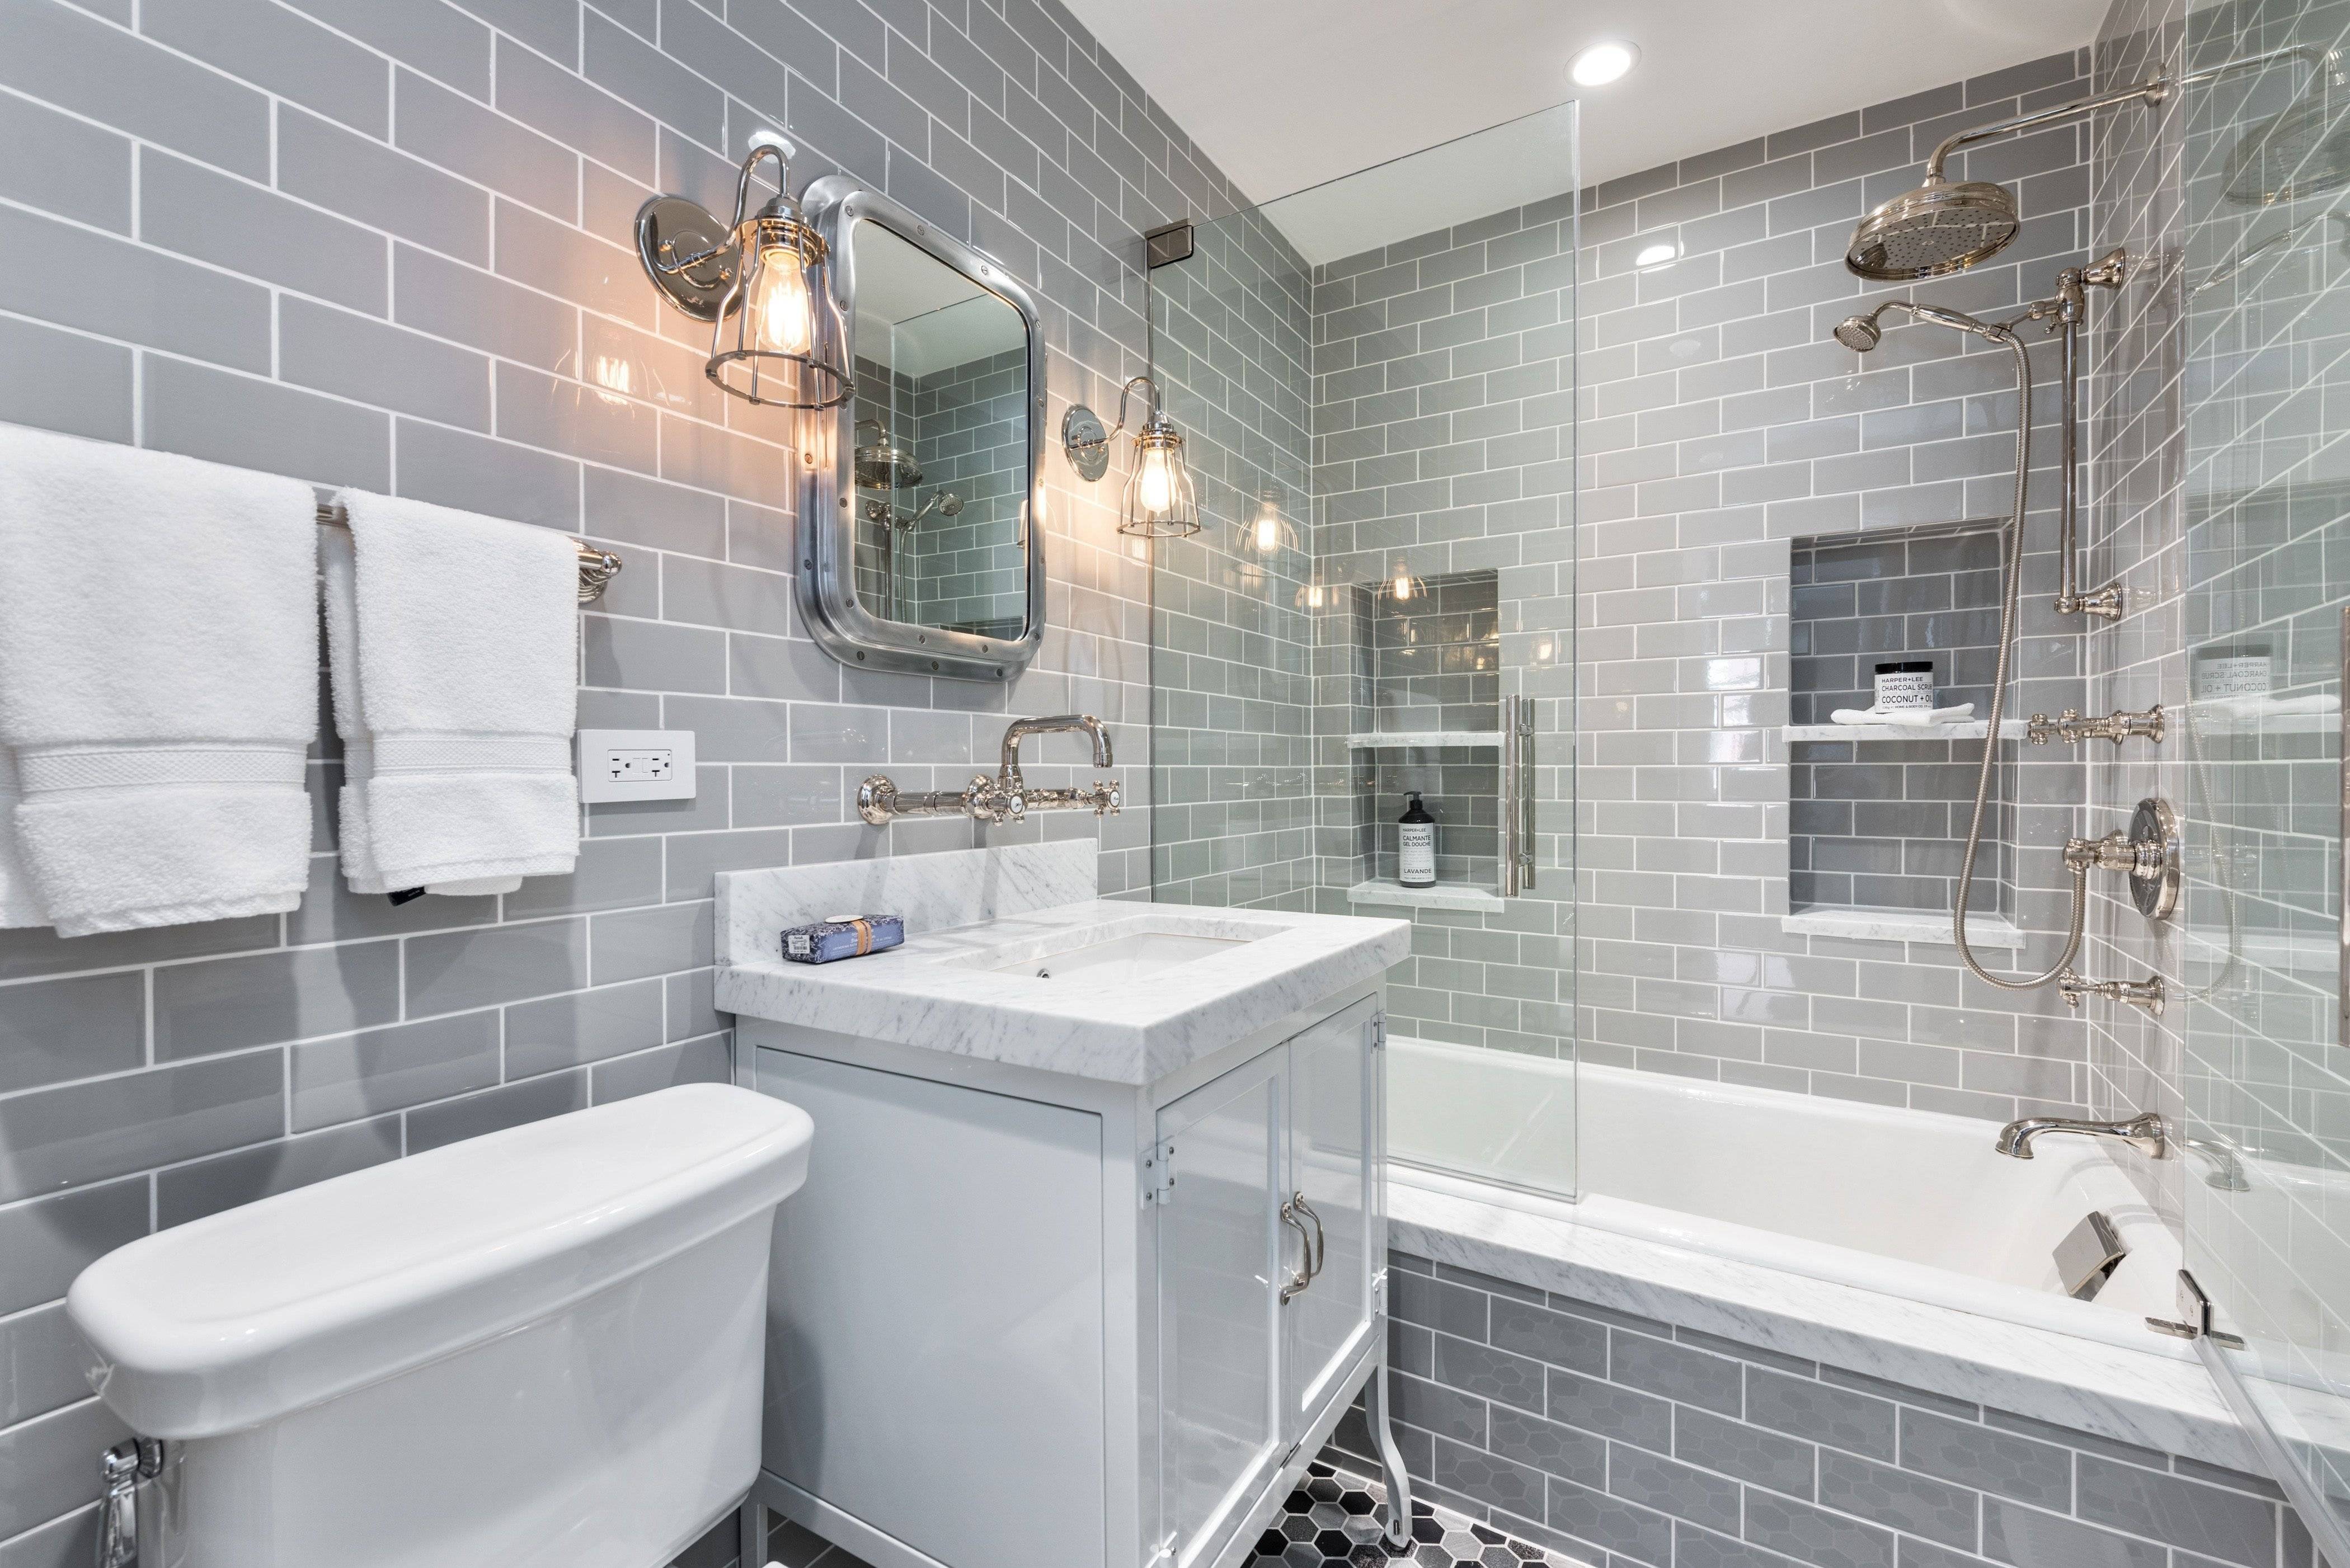  кабанчик в ванной комнате: 60+ фото интерьера ванной с плиткой .